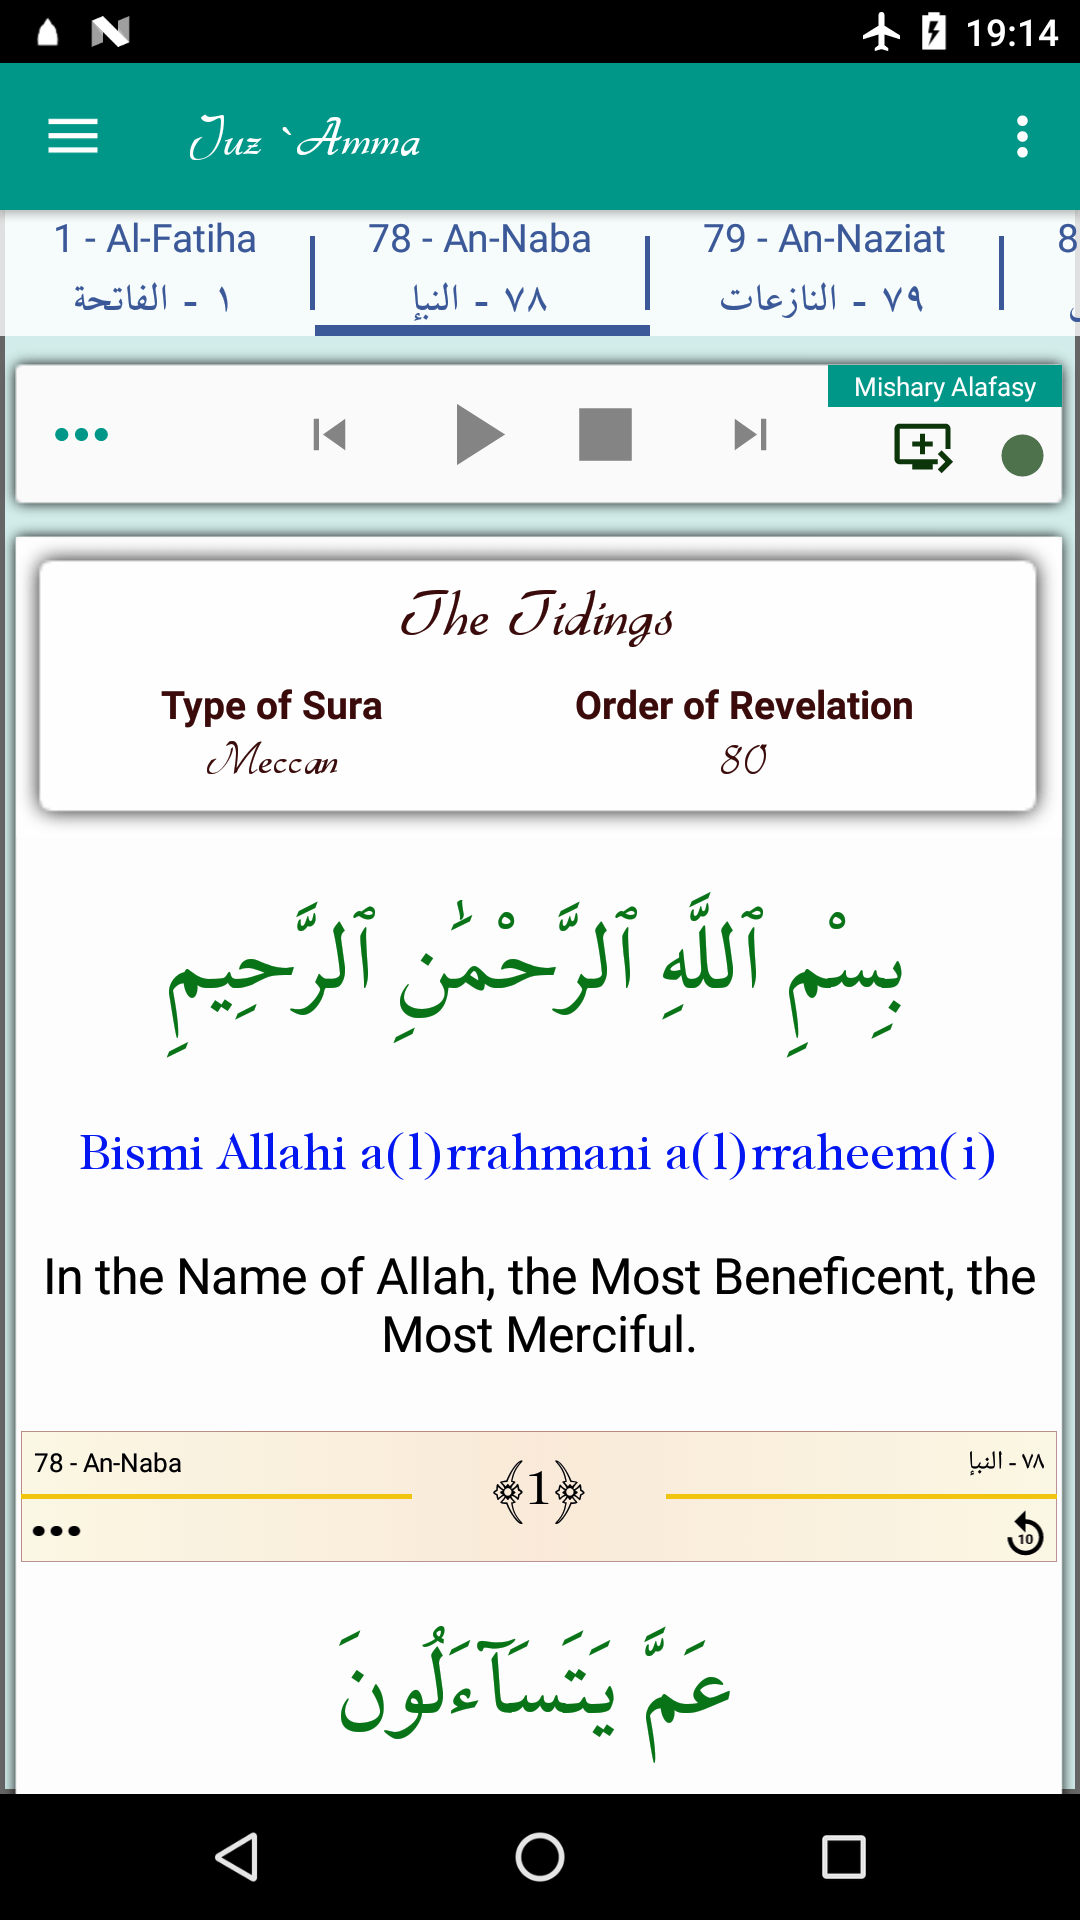 Android application Juz Amma (Suras of Quran) screenshort